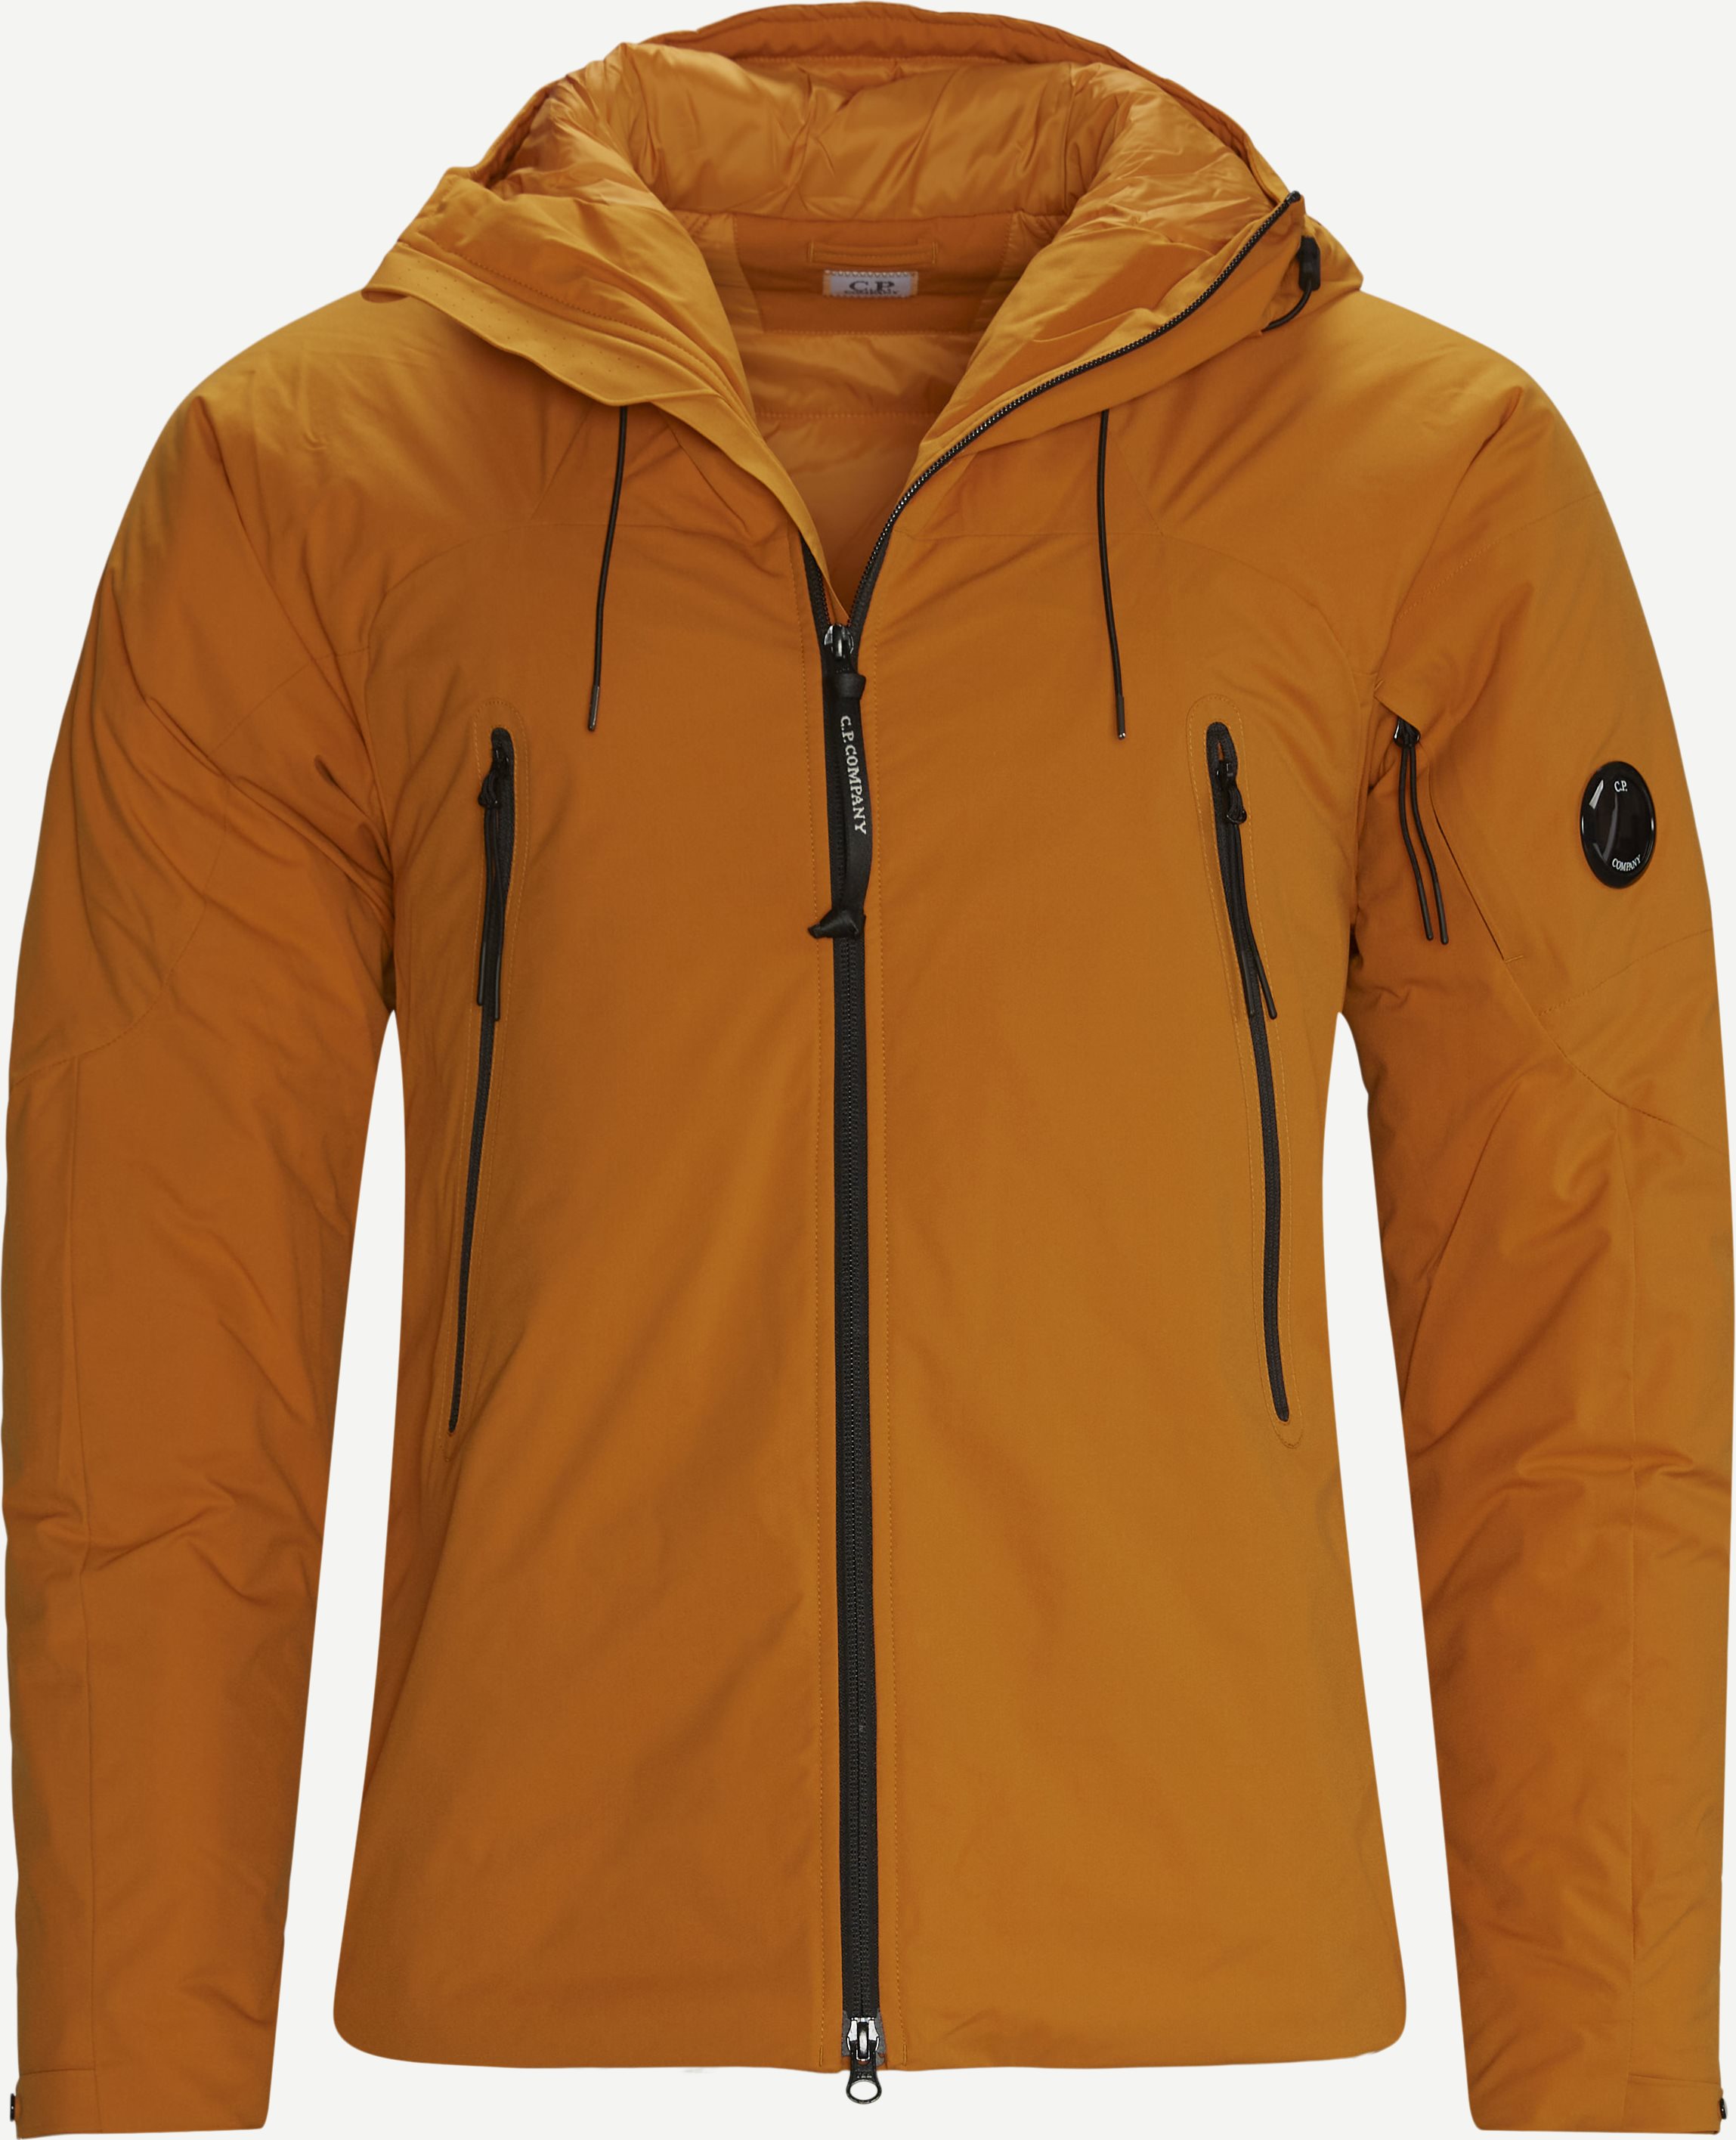 Outerwear Medium Jacket - Jakker - Regular fit - Orange